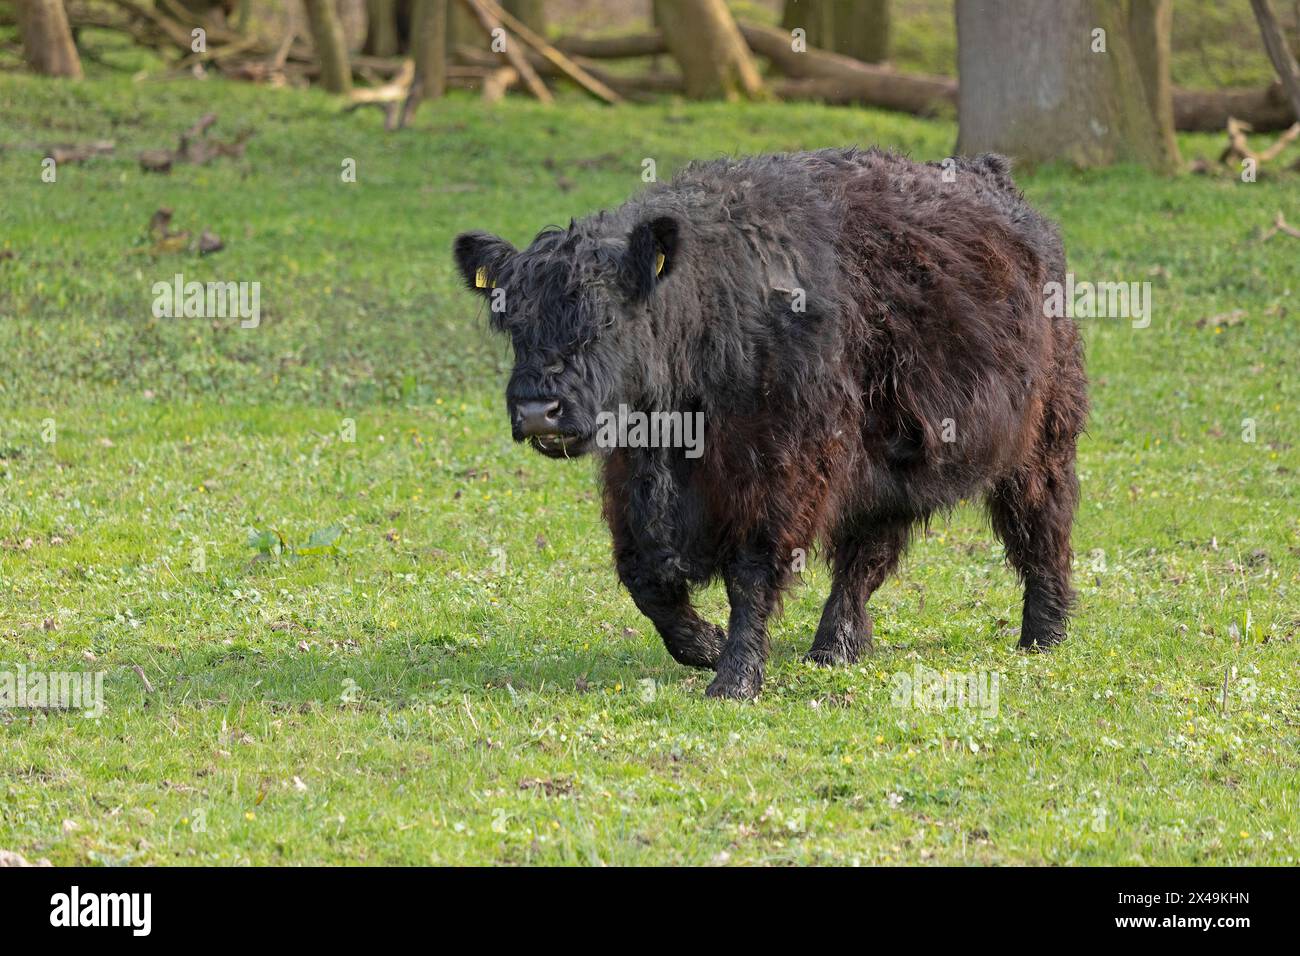 Galloway cattle, Gelting Birk, Goldhöft, Nieby, Schleswig-Holstein, Germany Stock Photo